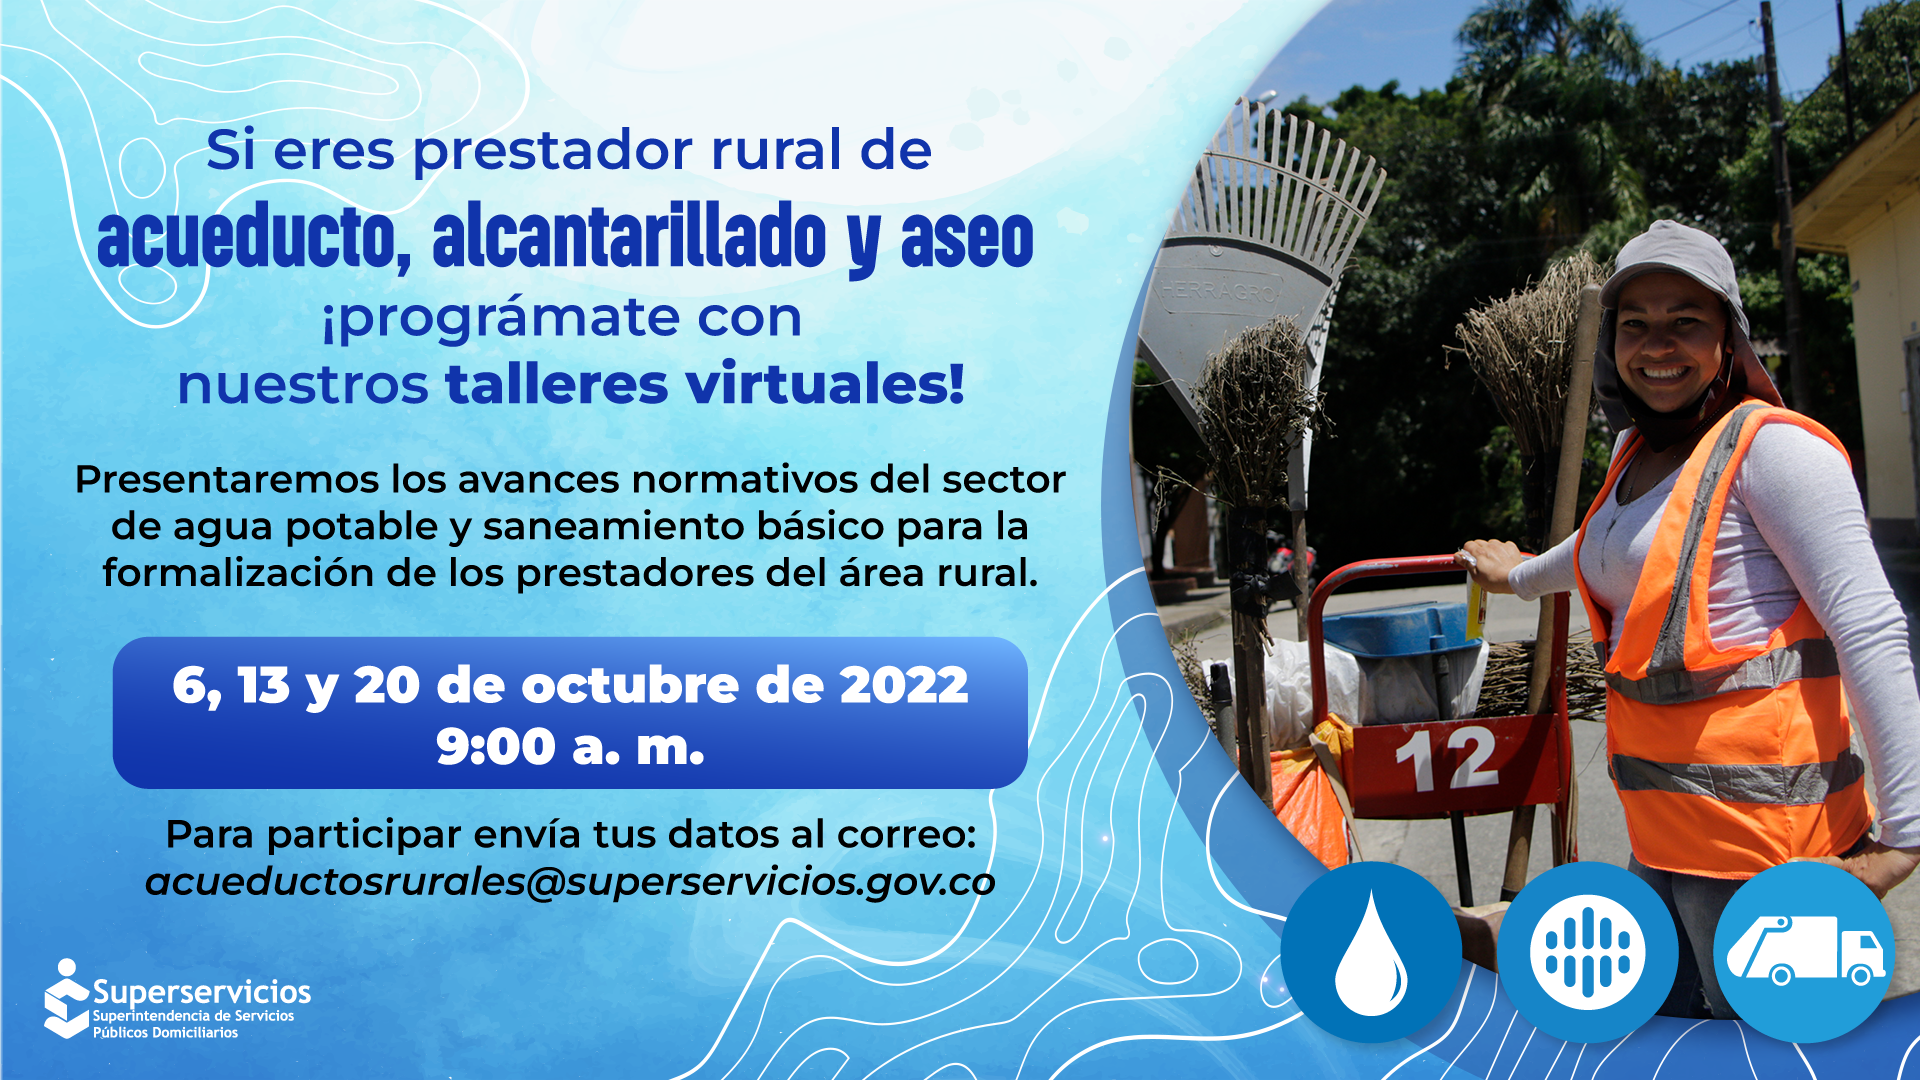 Taller virtual para prestadores rurales de Acueducto, Alcantarillado y Aseo, el 3, 13 y 20 de Octubre
